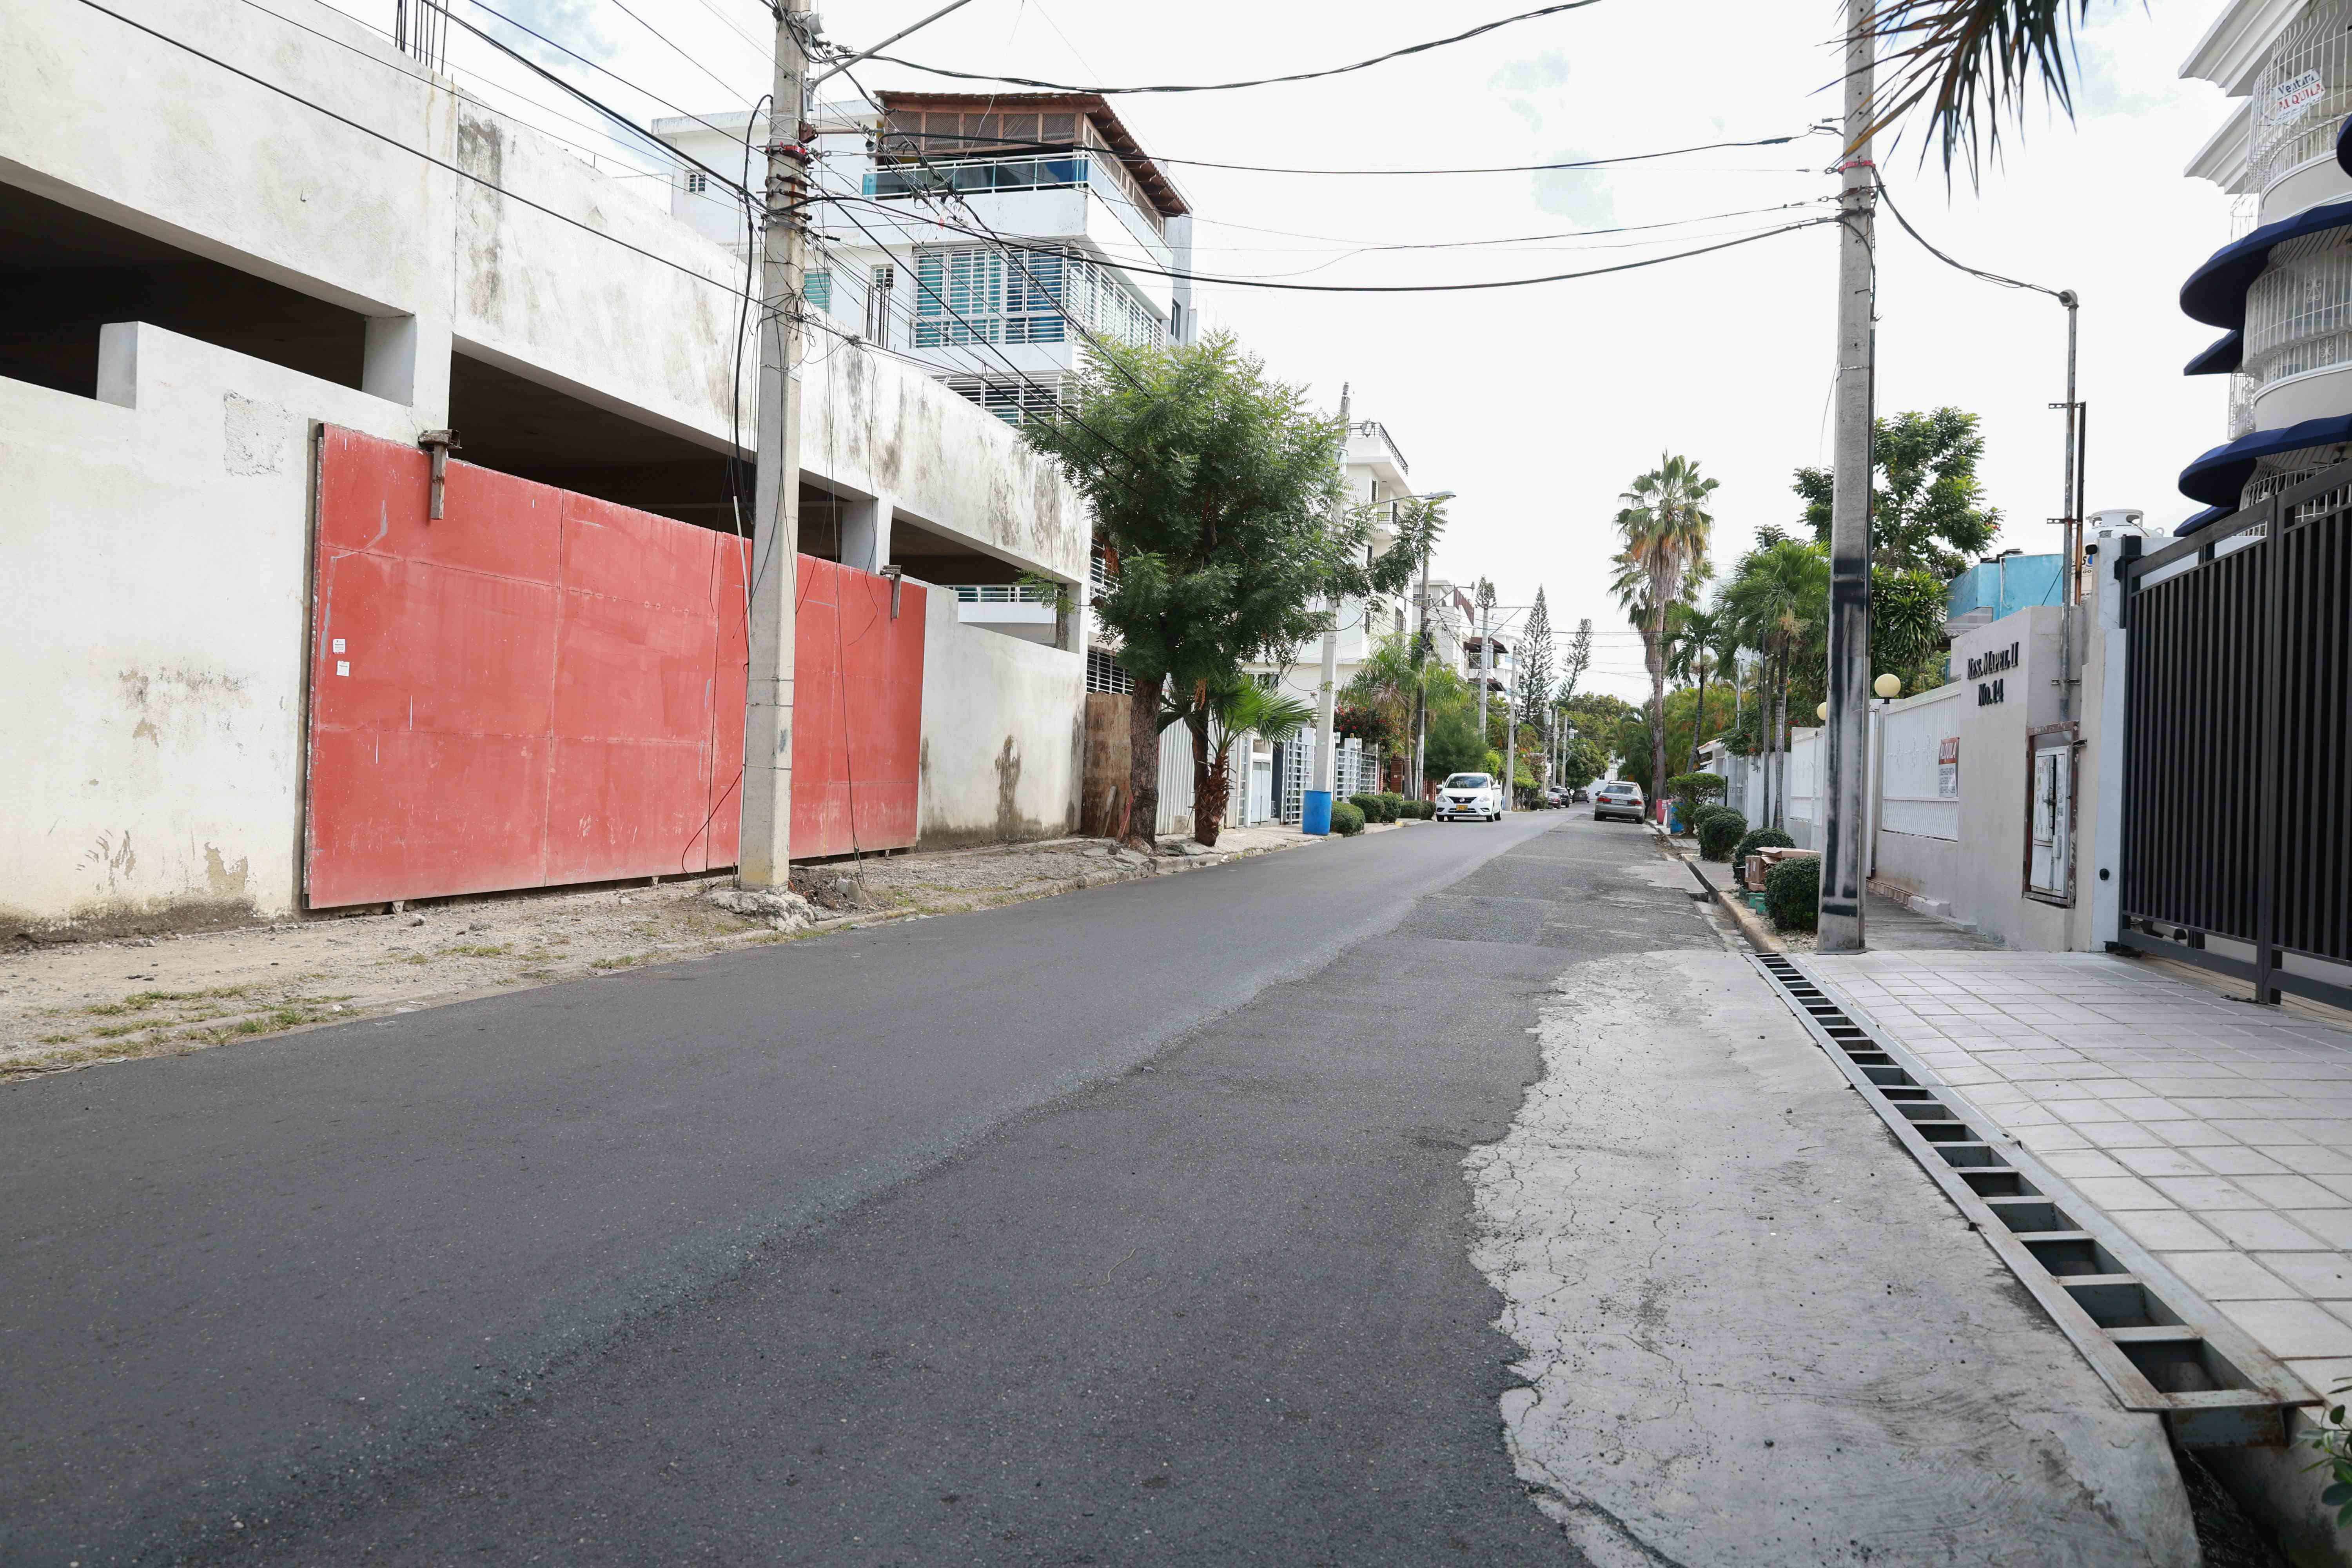 Los residentes en la zona reclaman el asfaltado completo de la vía.